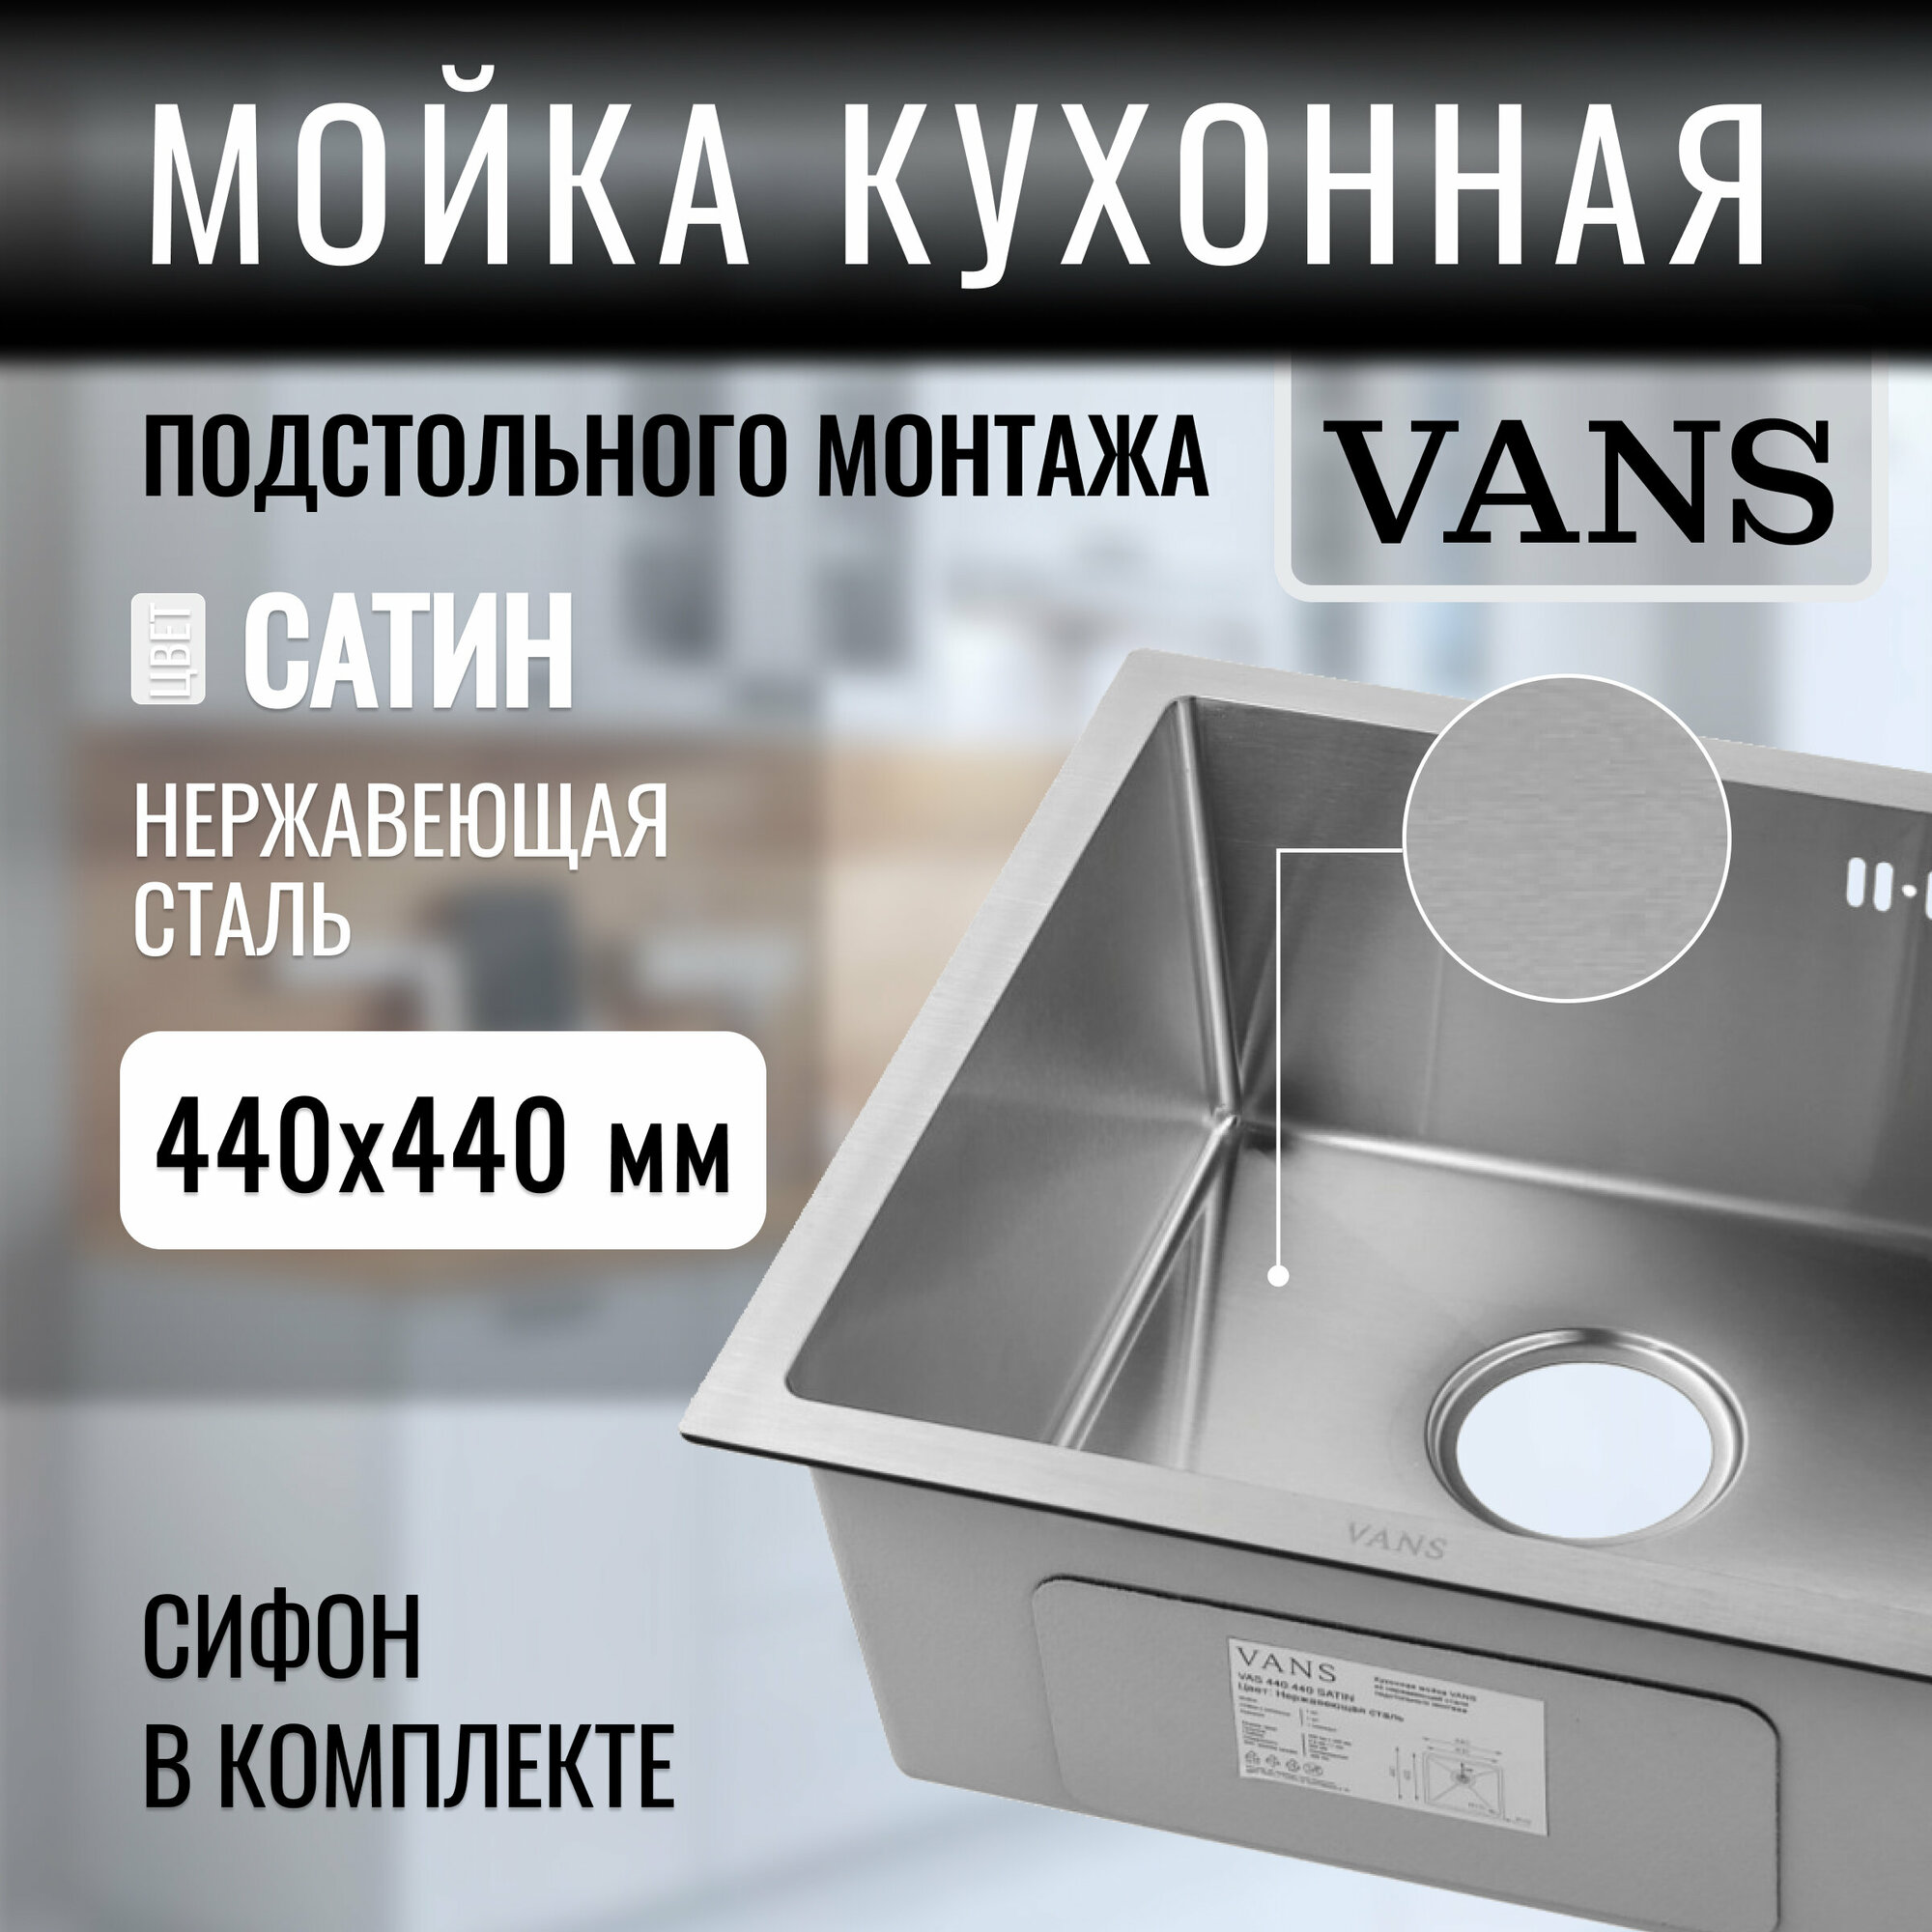 Кухонная мойка подстольный монтаж "VANS" 440*440*200 мм Satin